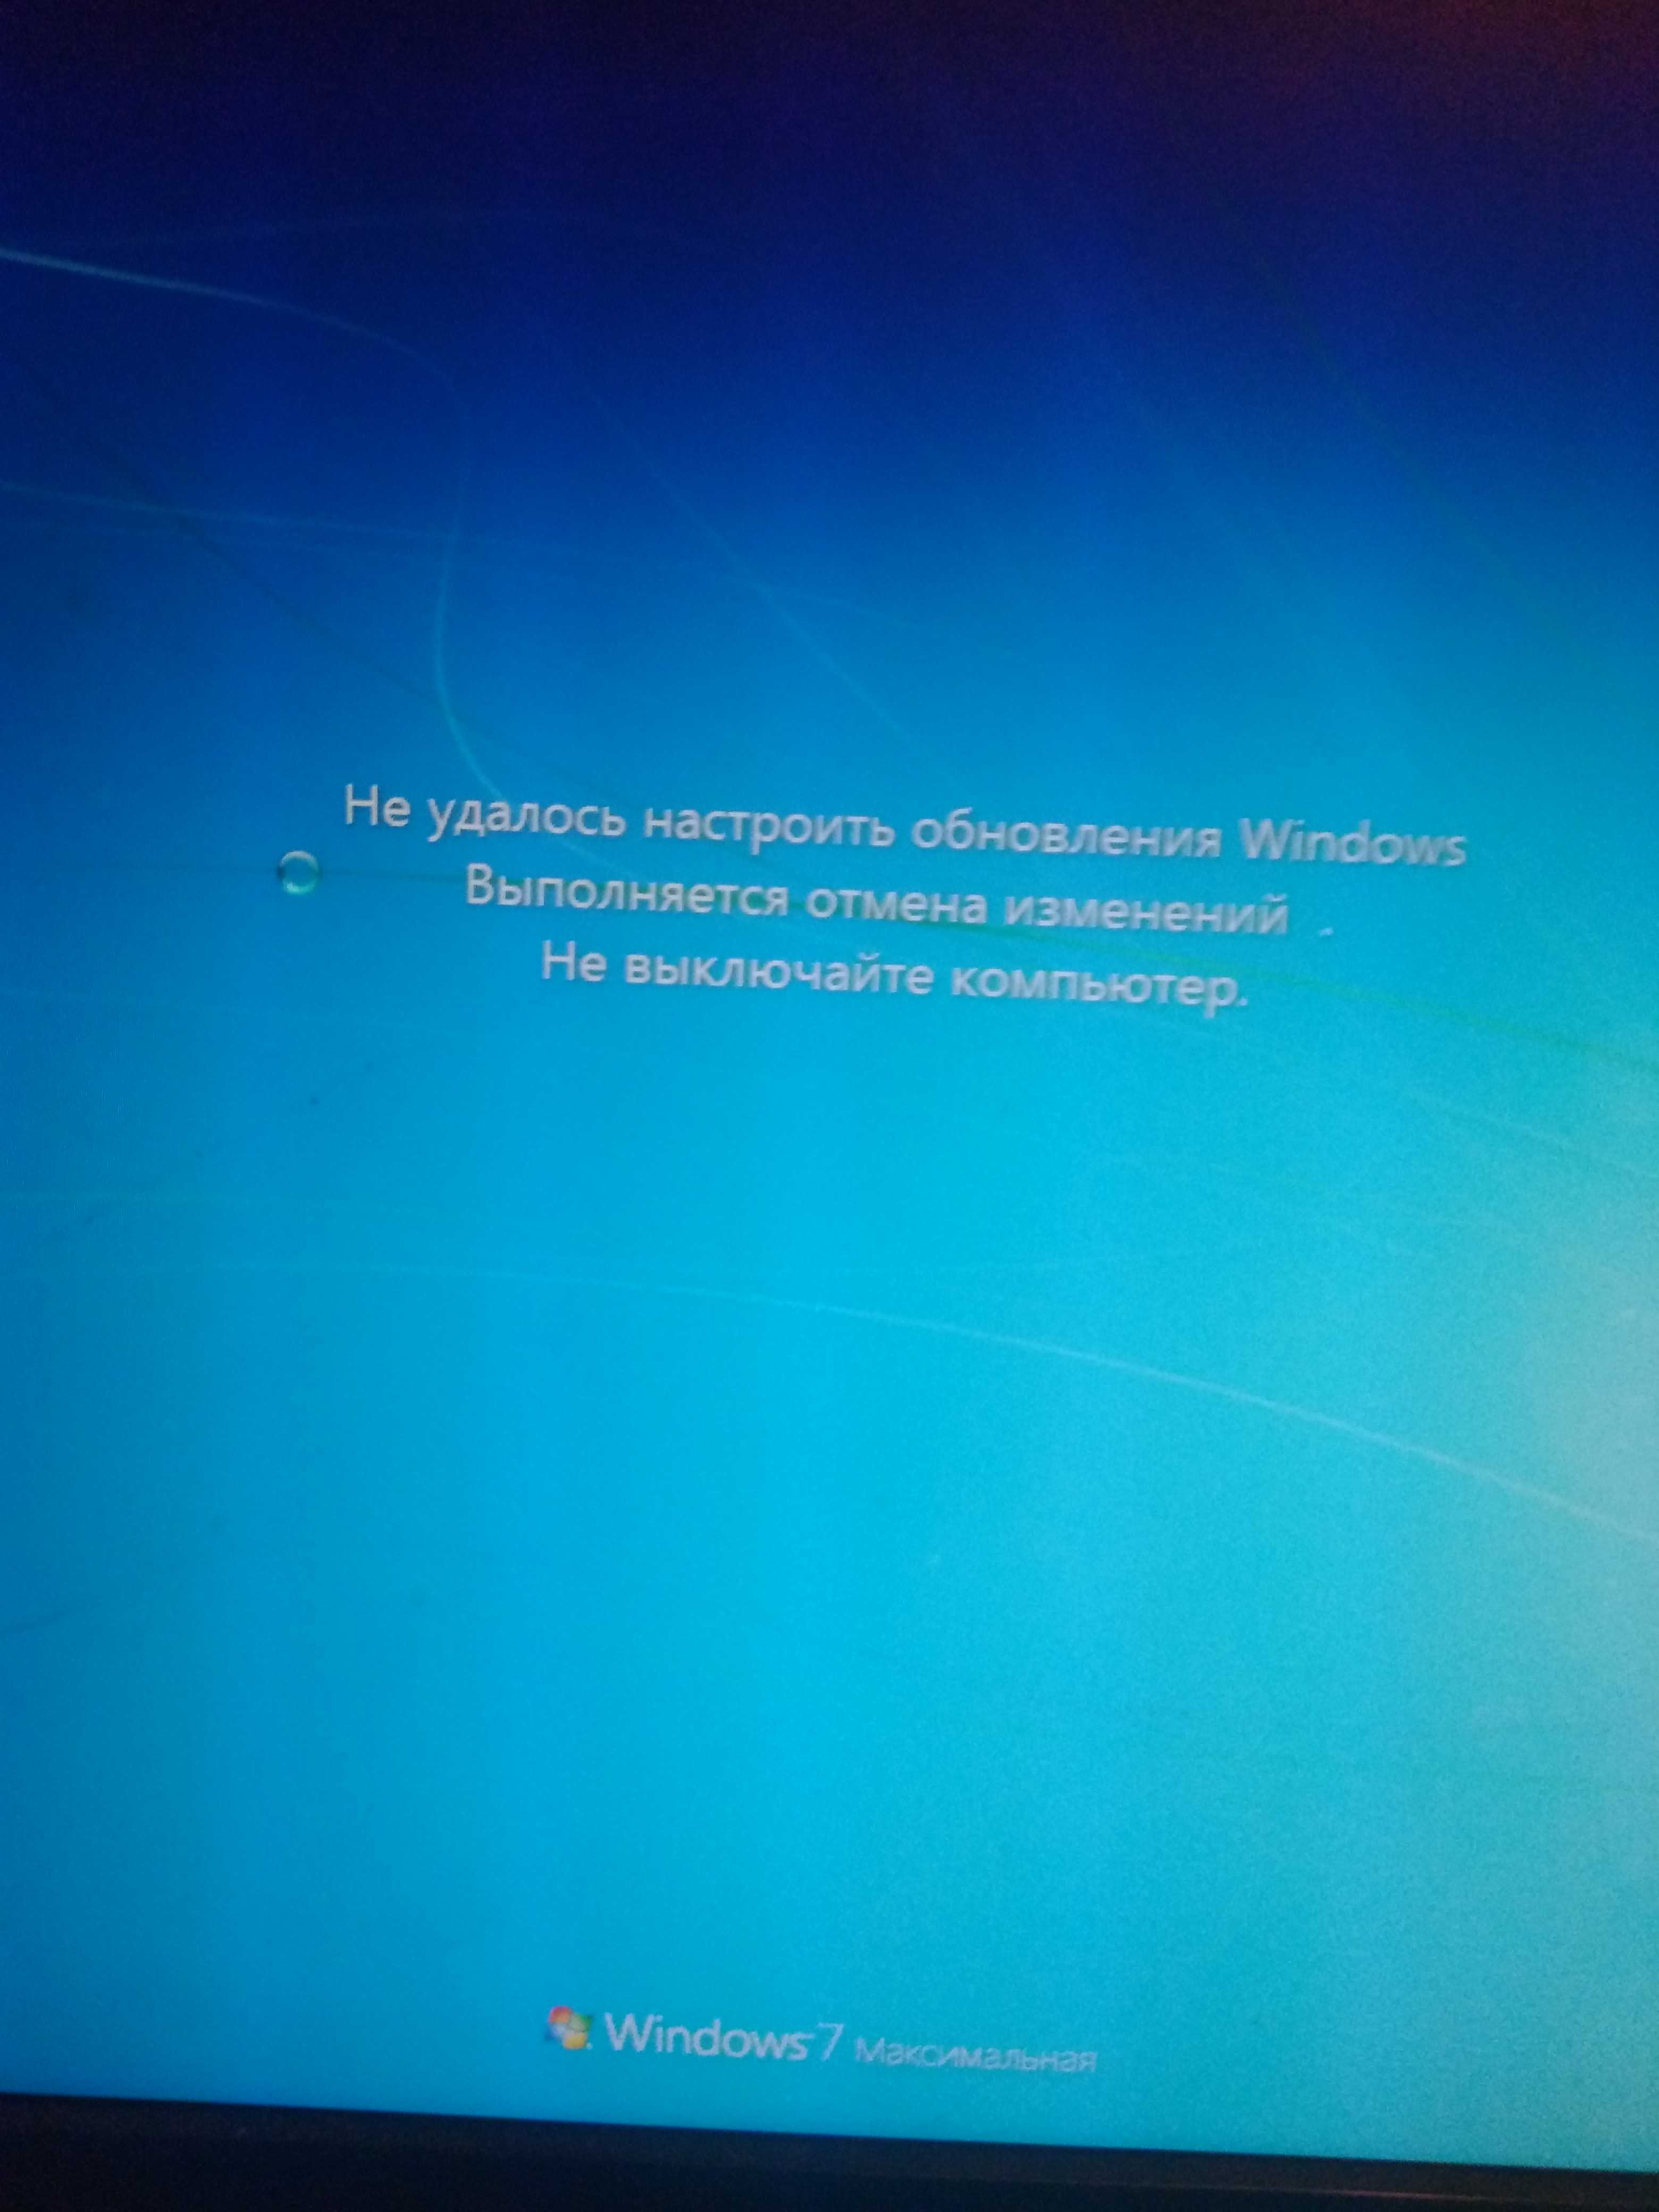 Ошибка отмена изменений. Обновление виндовс не выключайте компьютер. Обновление Windows не выключайте компьютер. Подготовка виндовс не выключайте компьютер. Работа с обновлениями.